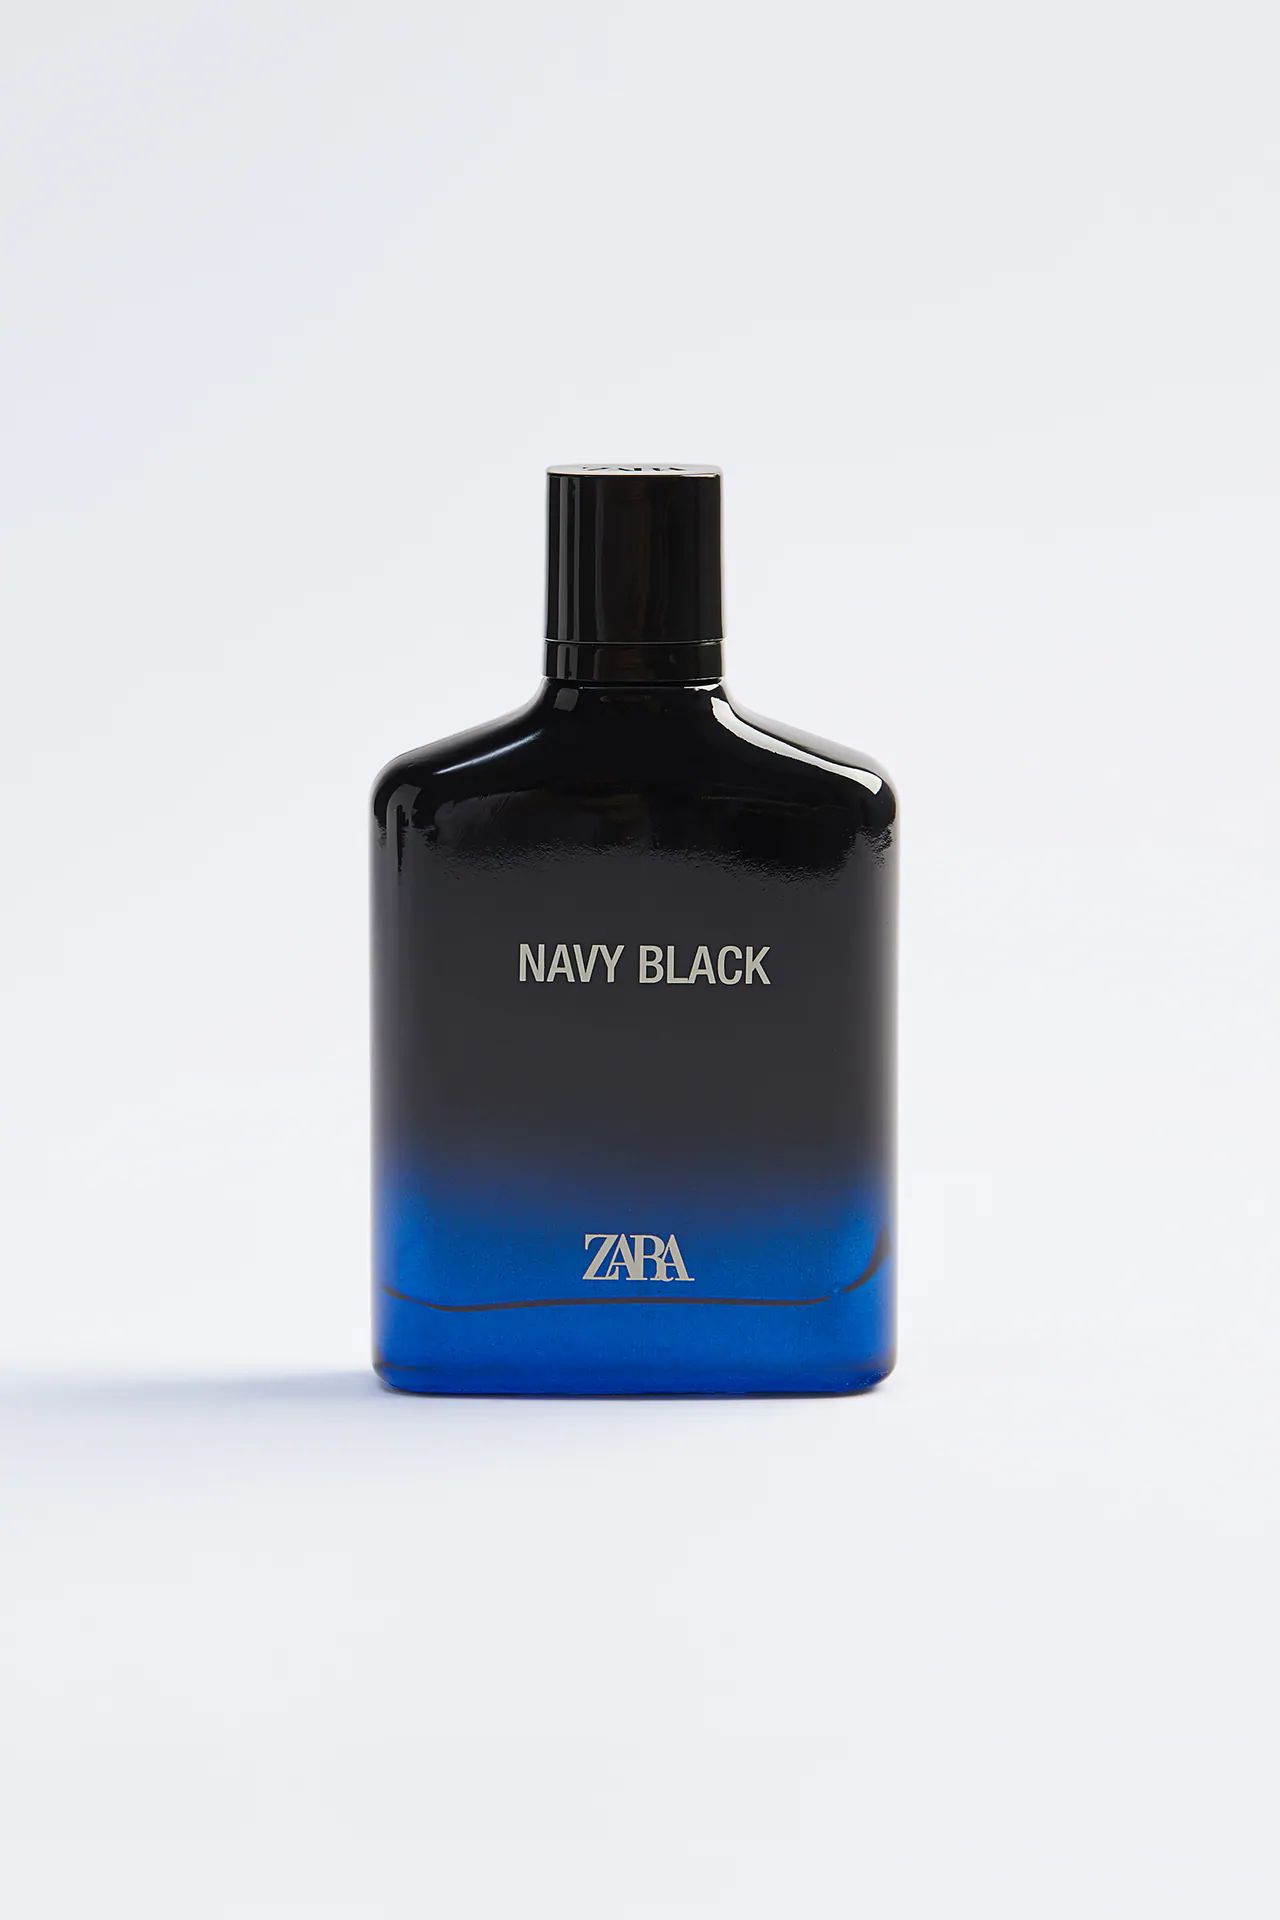 Navy Black Zara cologne - a new 